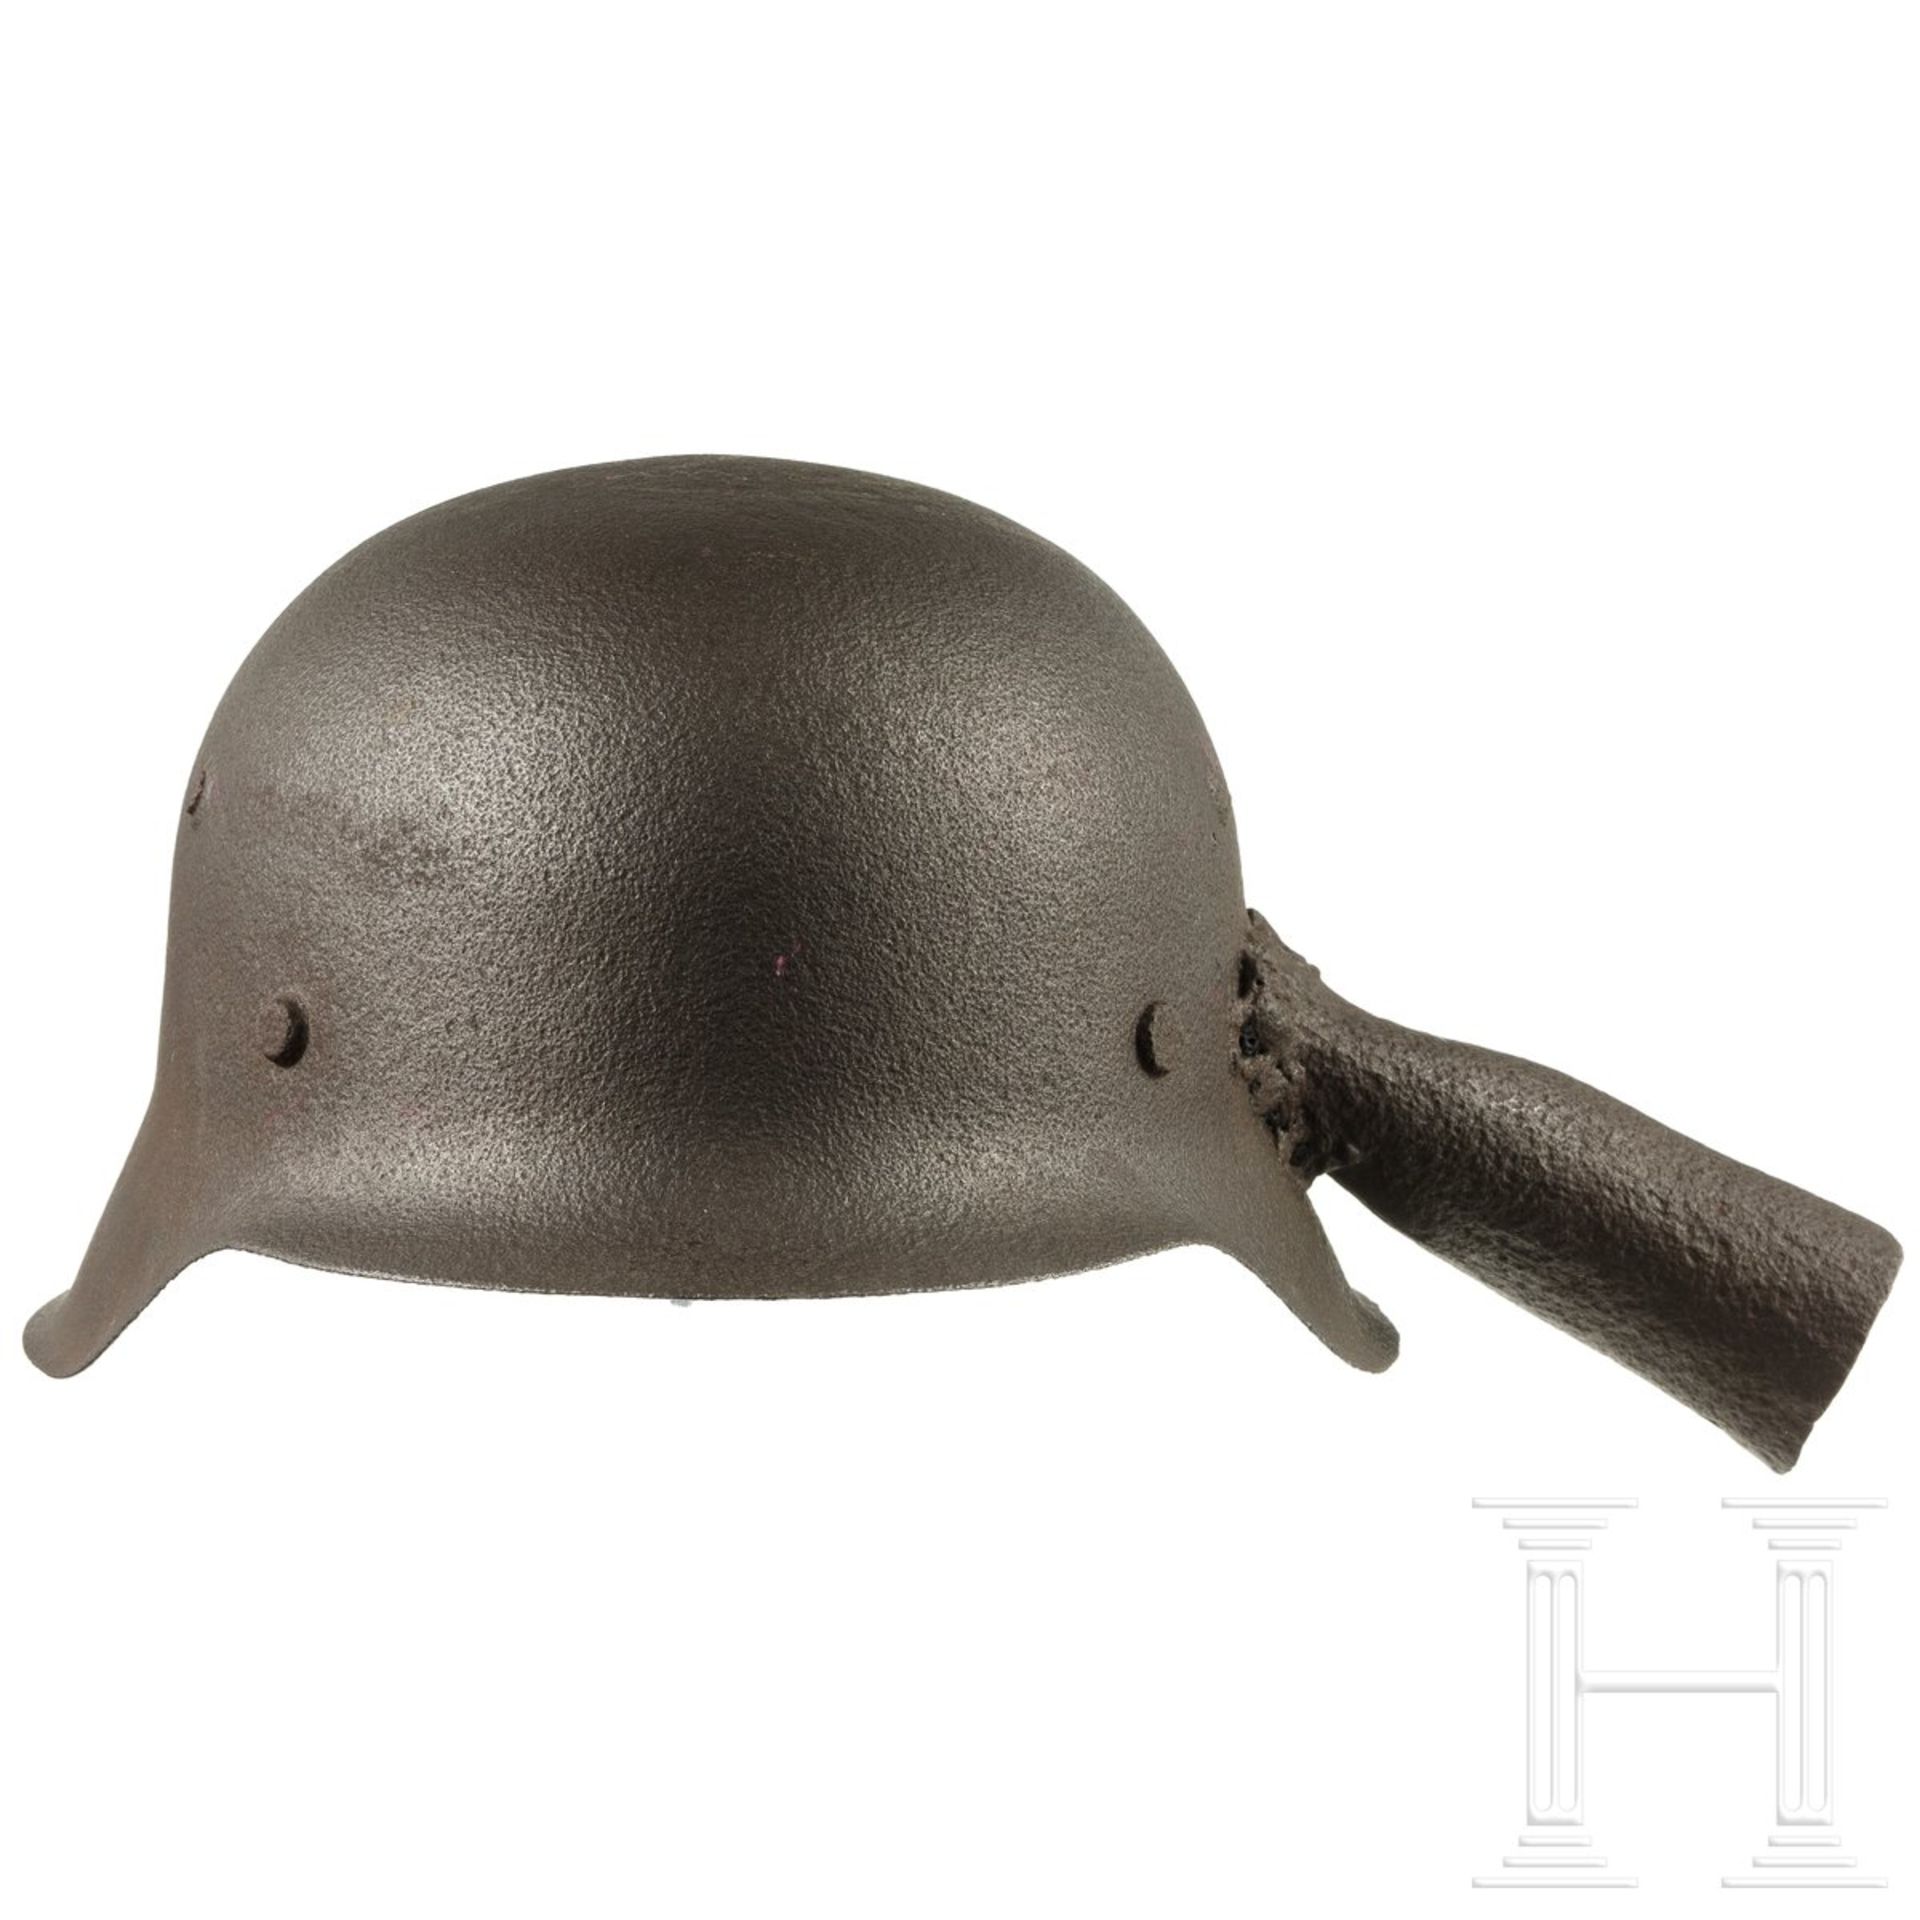 Stahlhelm M 42, umgearbeitet zu Kelle, deutsch, 1945/46 - Bild 2 aus 4